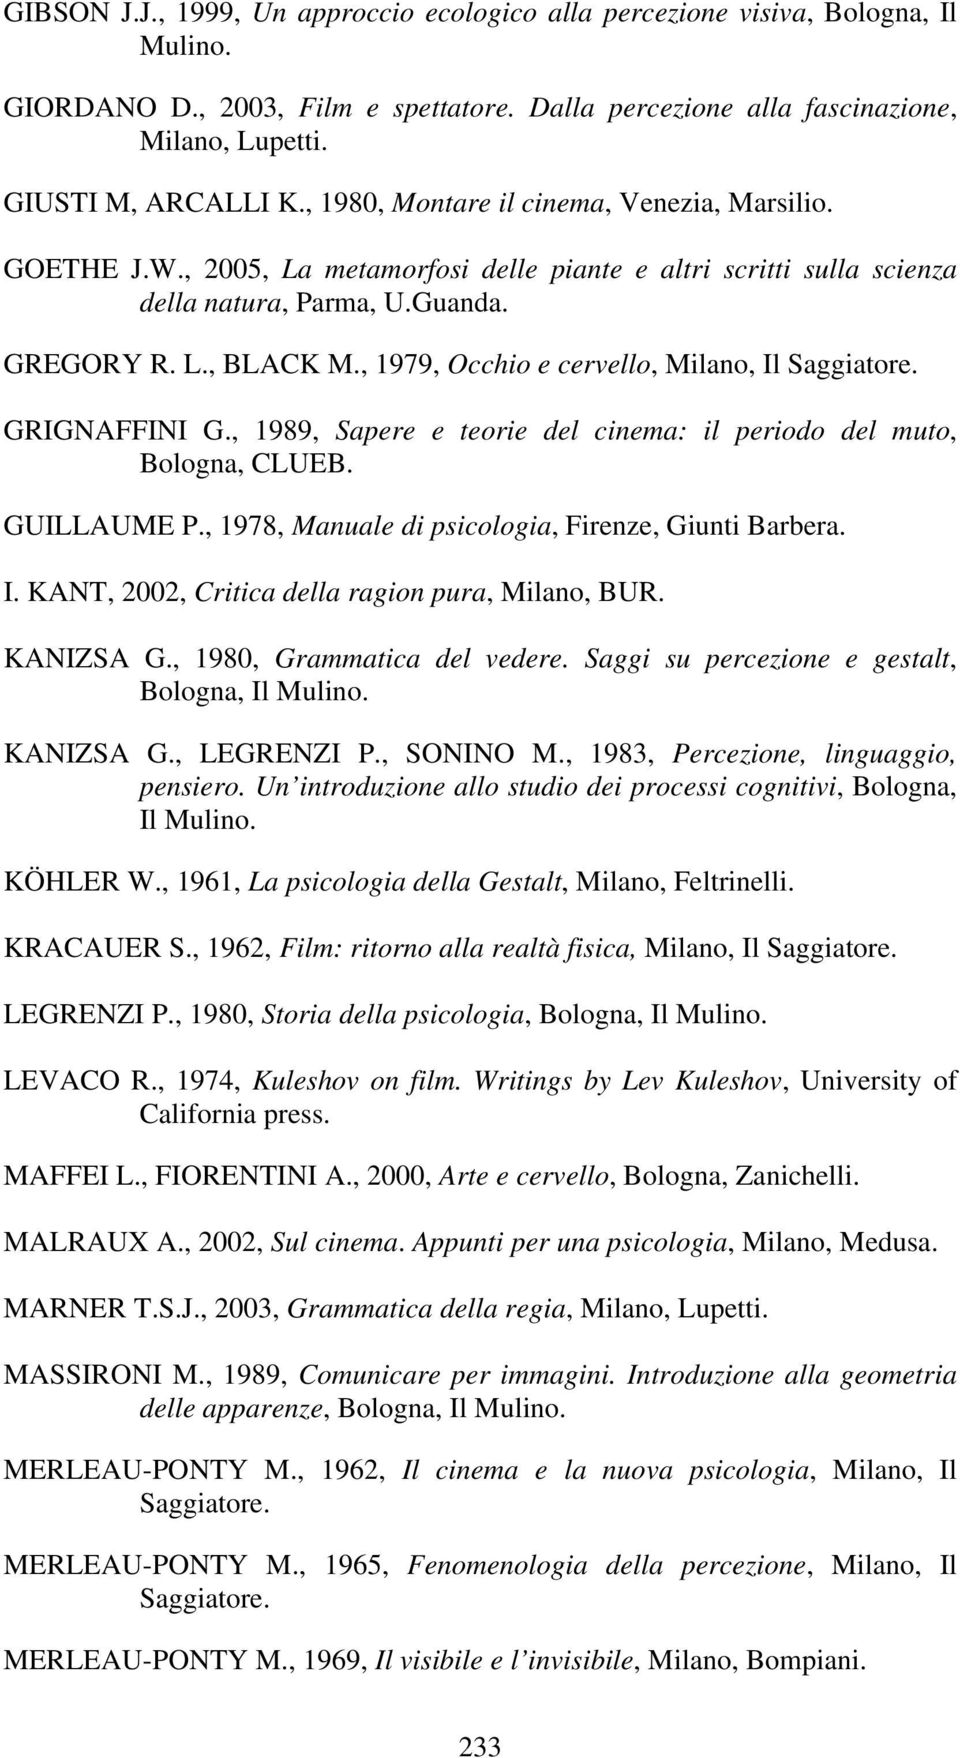 , 1979, Occhio e cervello, Milano, Il Saggiatore. GRIGNAFFINI G., 1989, Sapere e teorie del cinema: il periodo del muto, Bologna, CLUEB. GUILLAUME P.